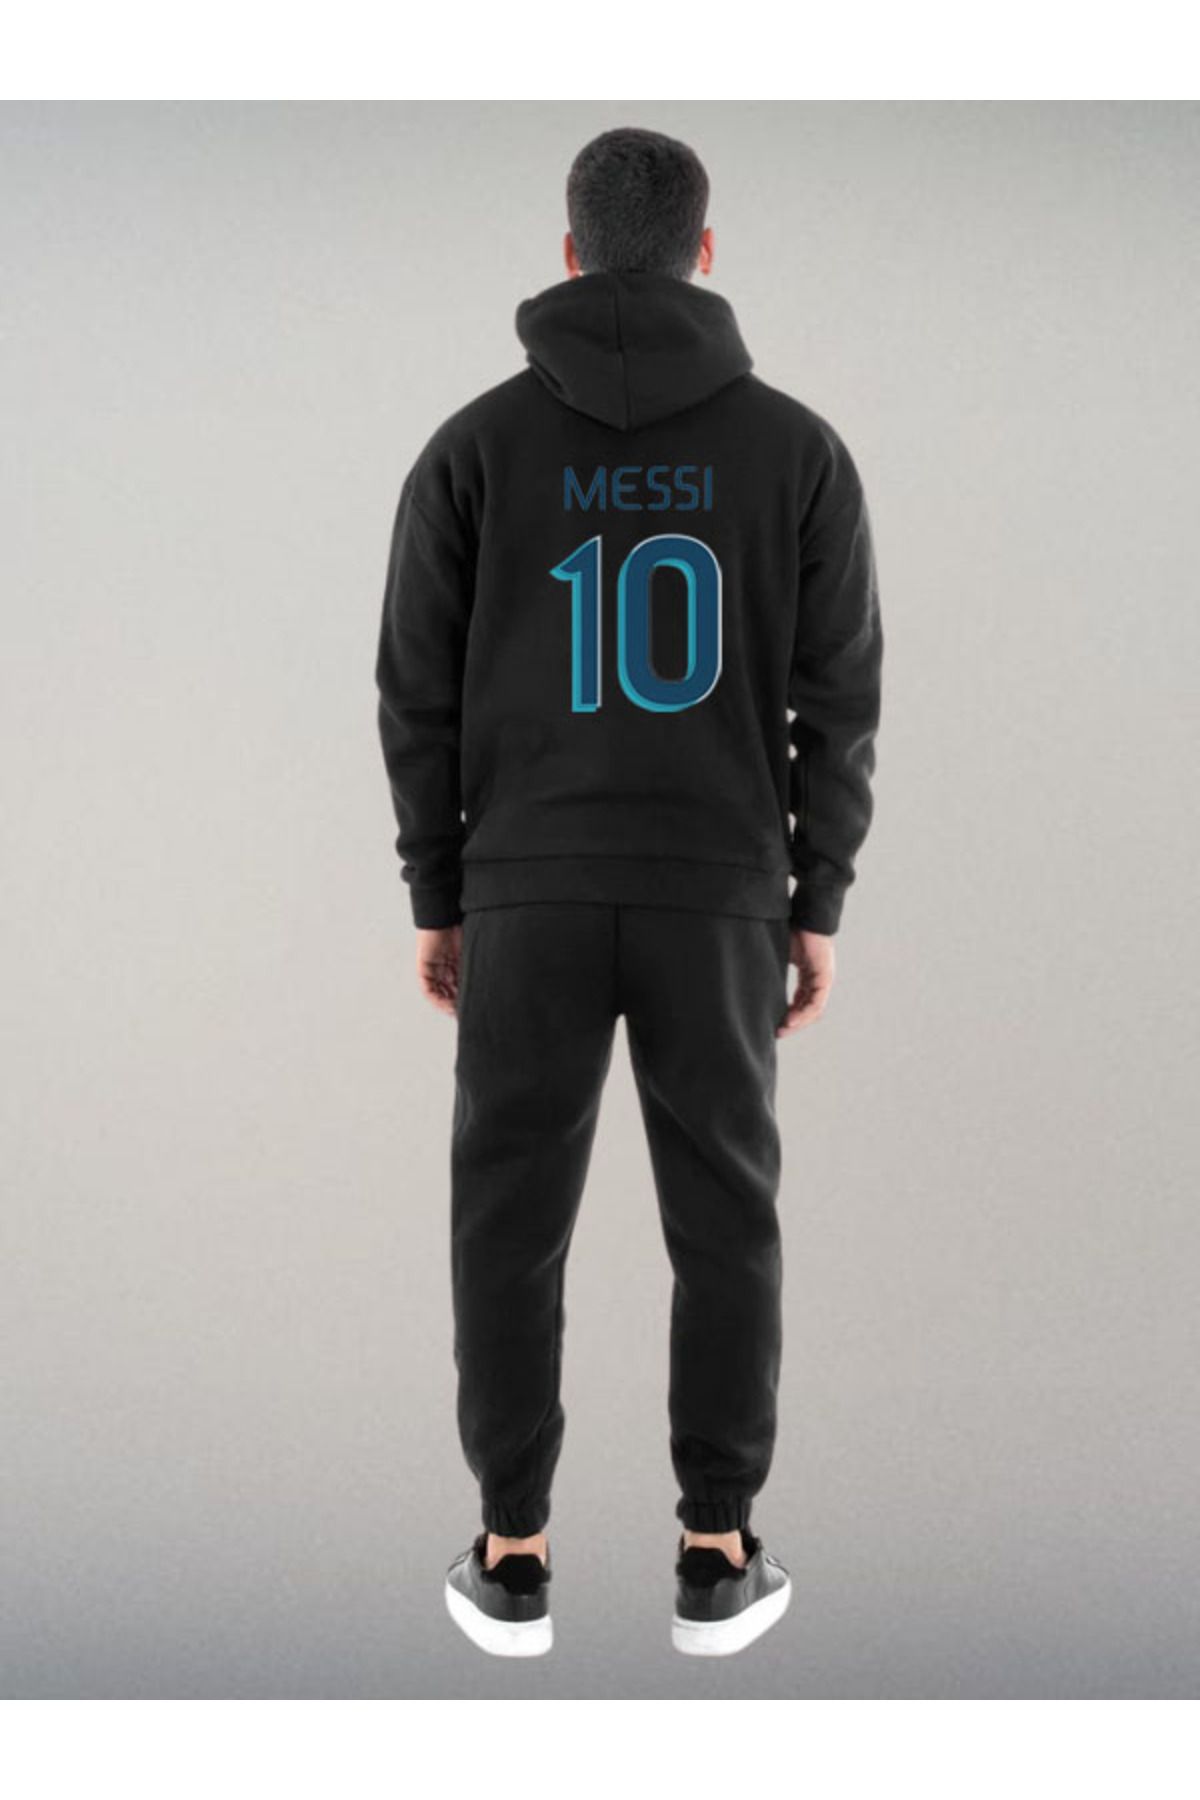 Darkia Lionel Messi 10 Özel Tasarım Baskılı Kapşonlu Sweatshirt Hoodie Spor Eşofman Takımı